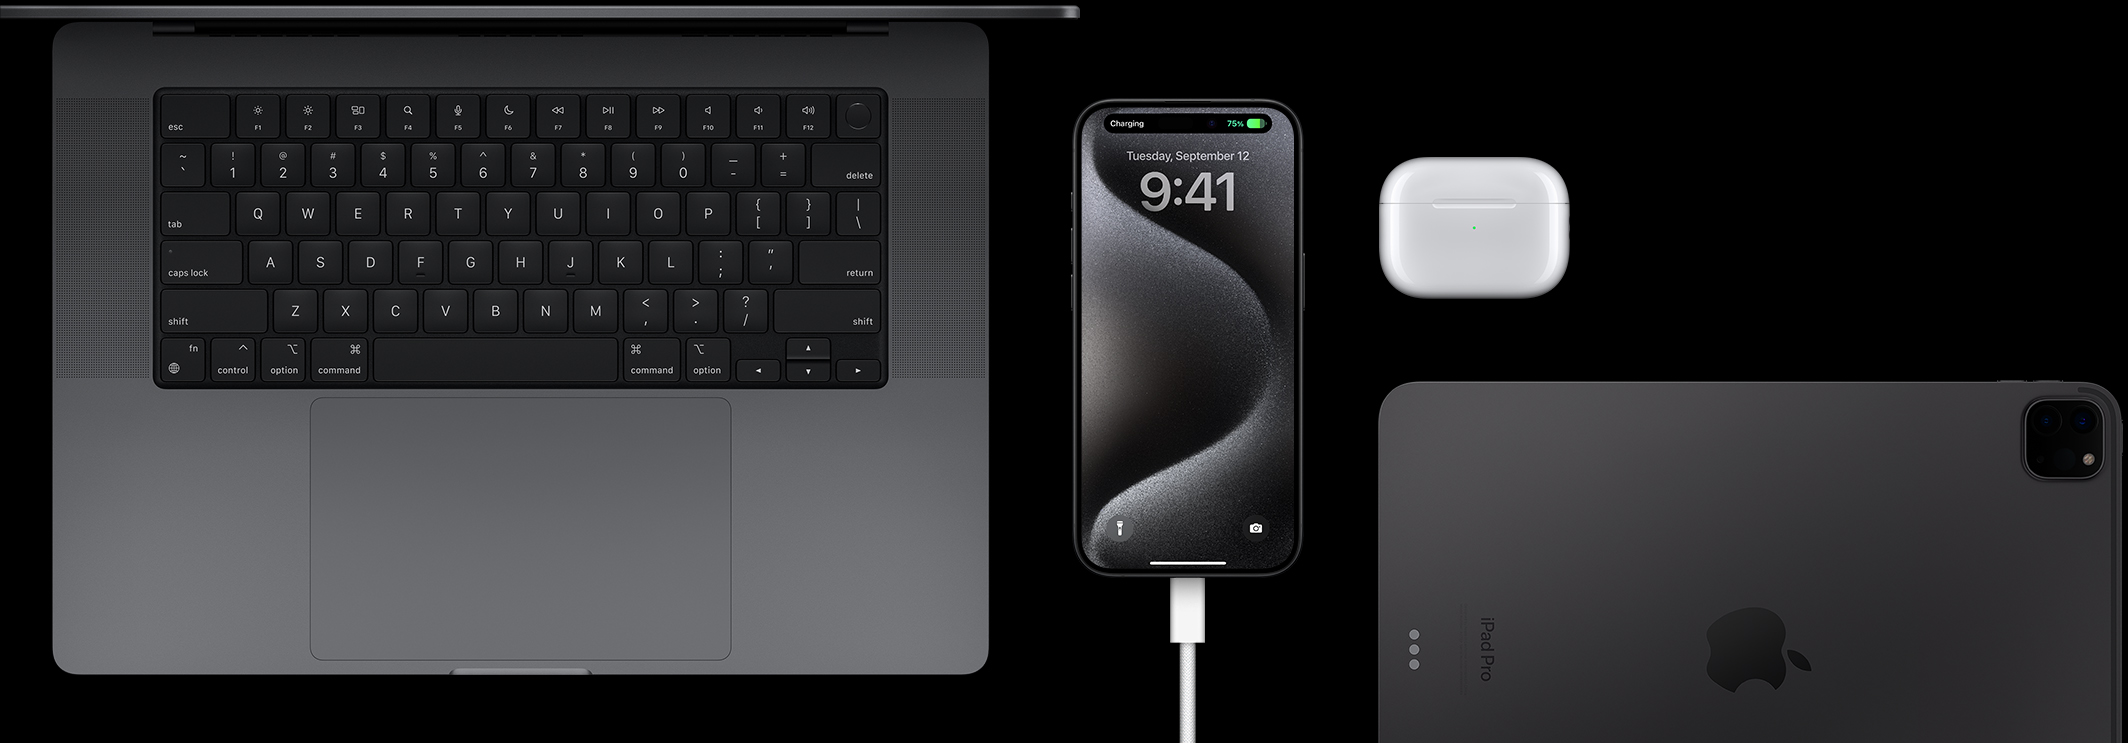 Ein iPhone 15 Pro mit angeschlossenem USB-C Kabel, flankiert von einem MacBook Pro, AirPods Pro und einem iPad